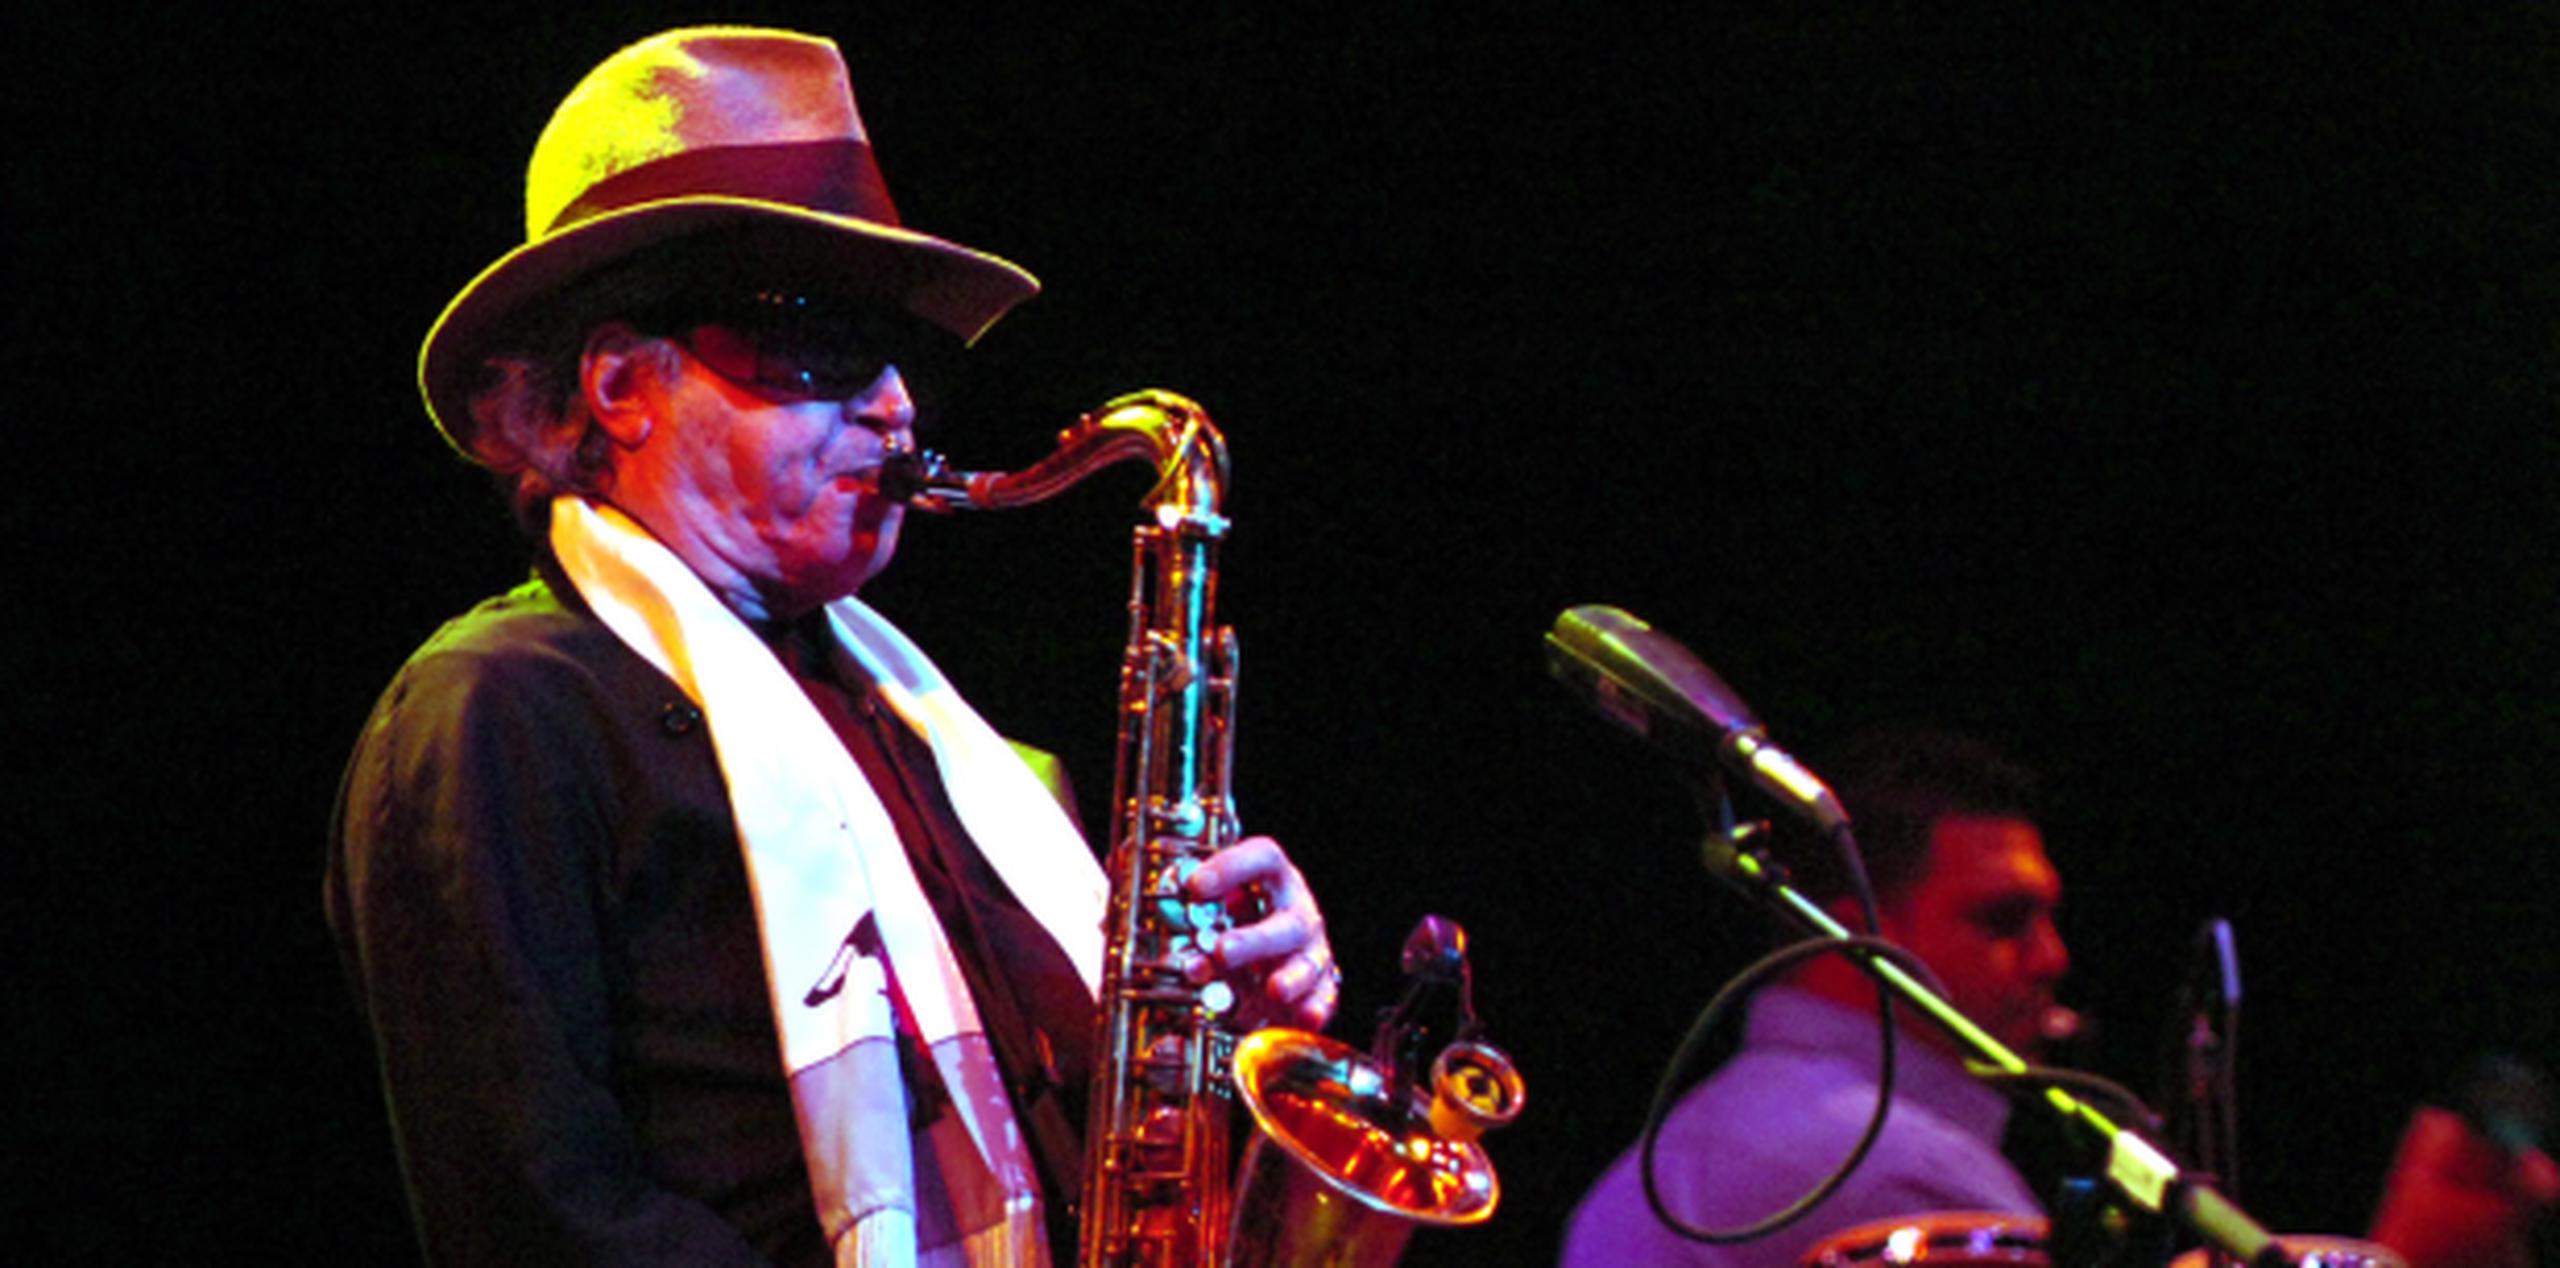 El saxofonista Leonardo "Gato" Barbieri grabó 35 álbumes durante su carrera. (Archivo)